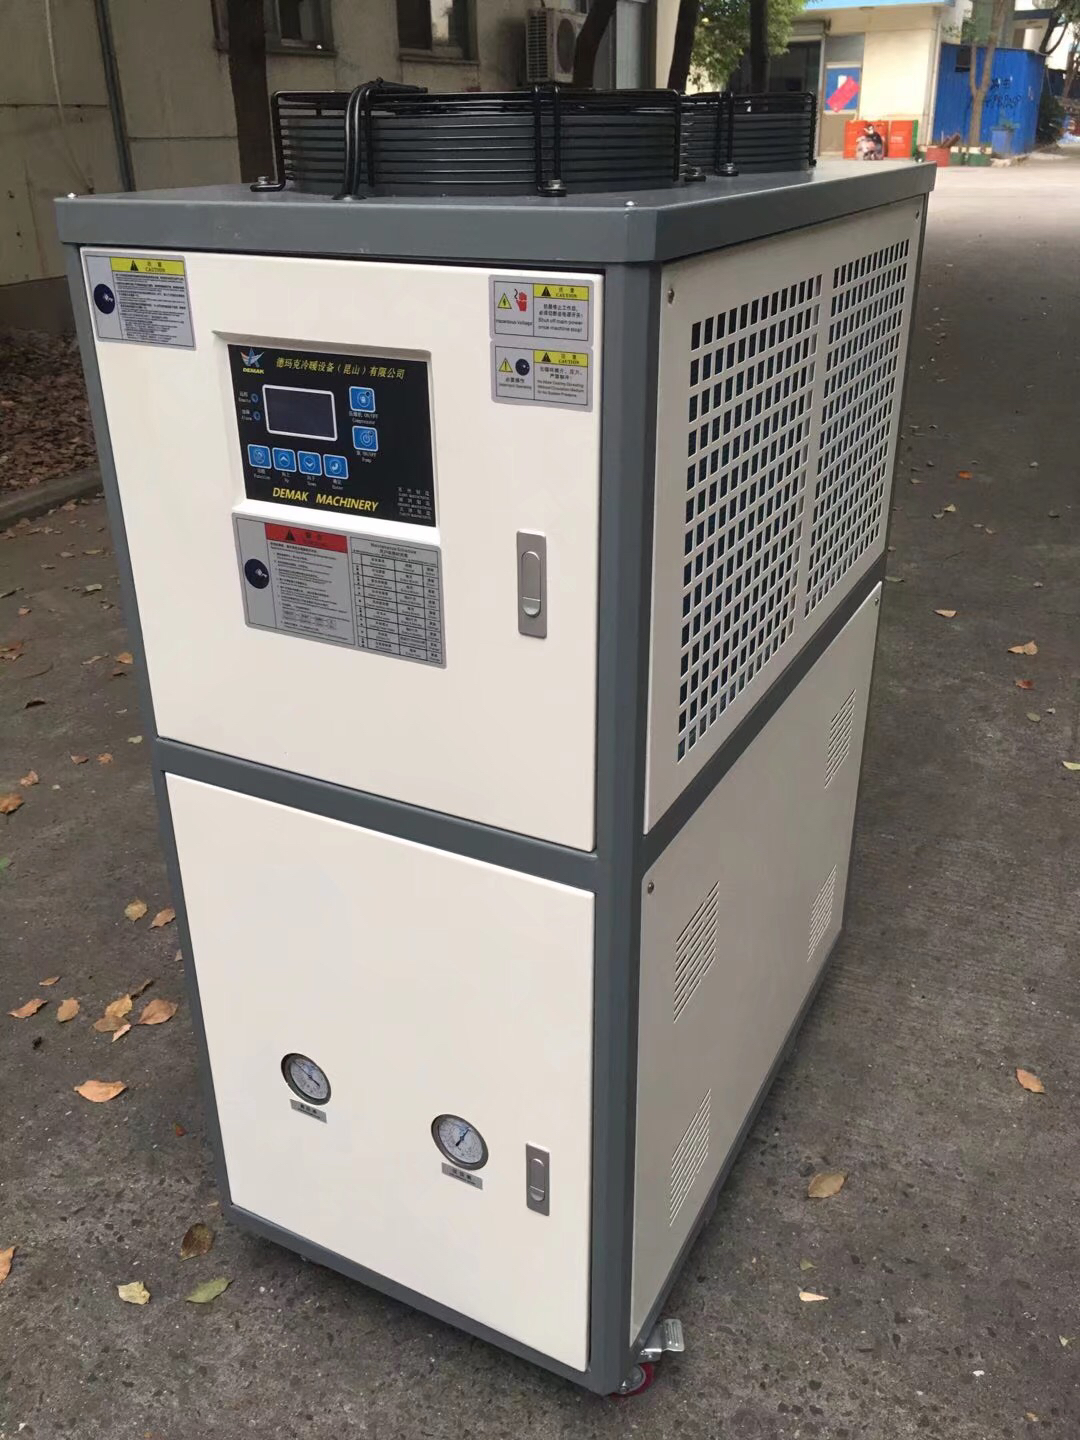 温控设备生产厂家 工业制冷机价格  冷暖设备制造公司  挤出专用冷水机  风冷式冷热一体冷水机组